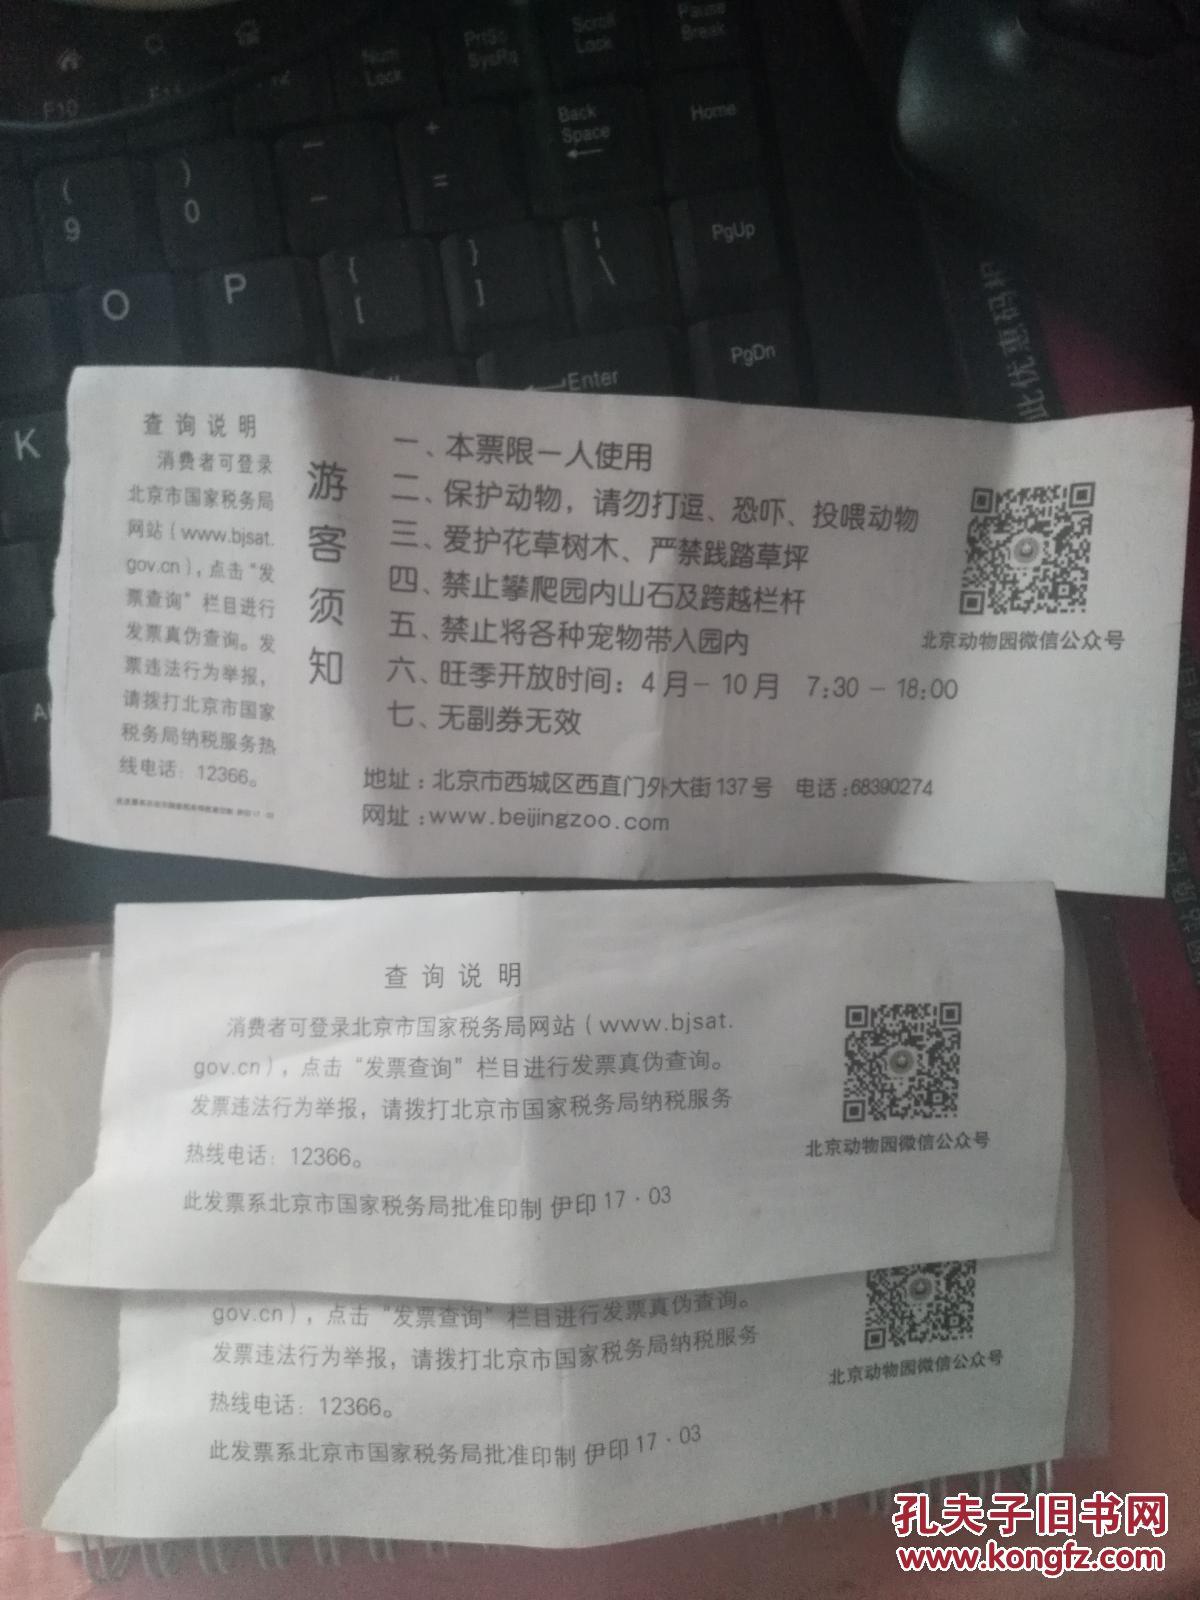 北京动物园门票3张 拍品编号:28745946